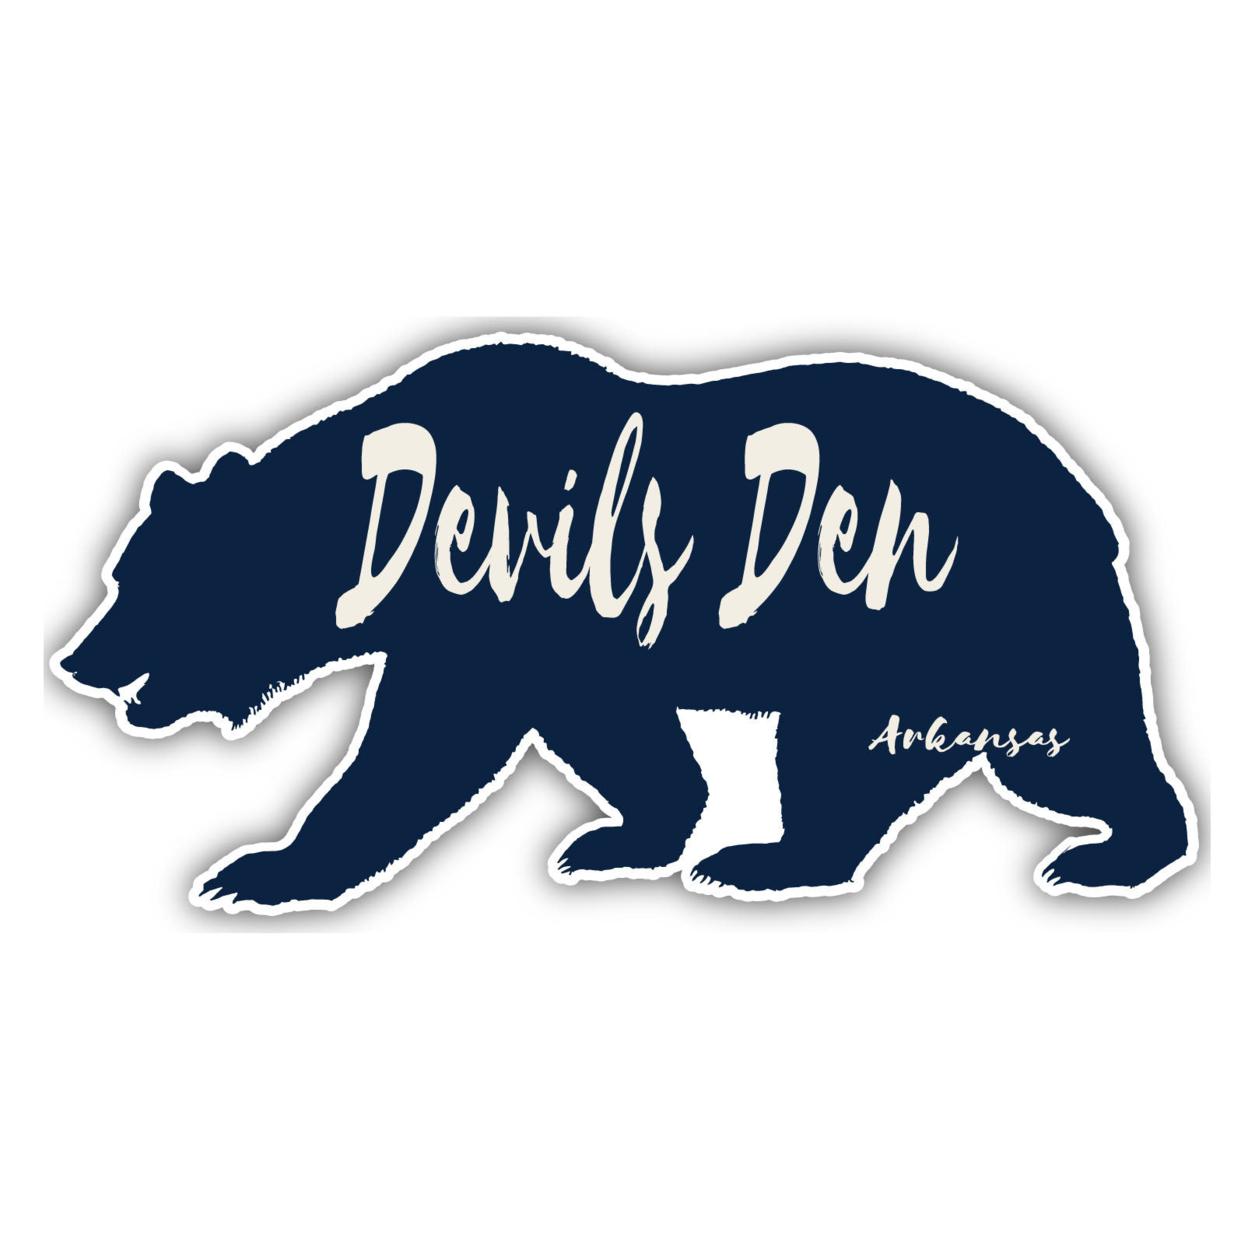 Devils Den Arkansas Souvenir Decorative Stickers (Choose Theme And Size) - Single Unit, 8-Inch, Great Outdoors